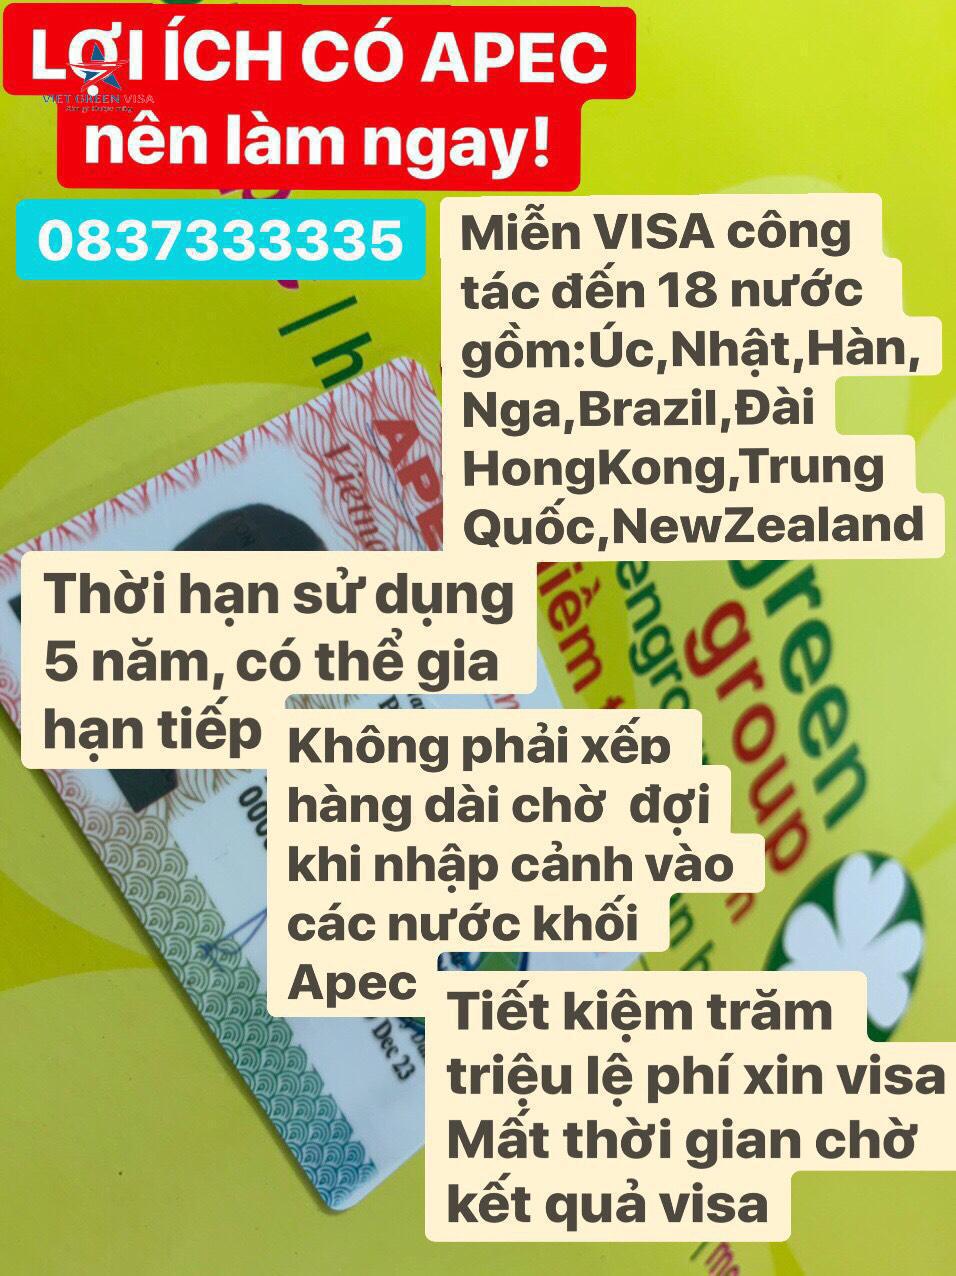 Dịch vụ gia hạn thẻ Apec tại Thừa Thiên Huế uy tín